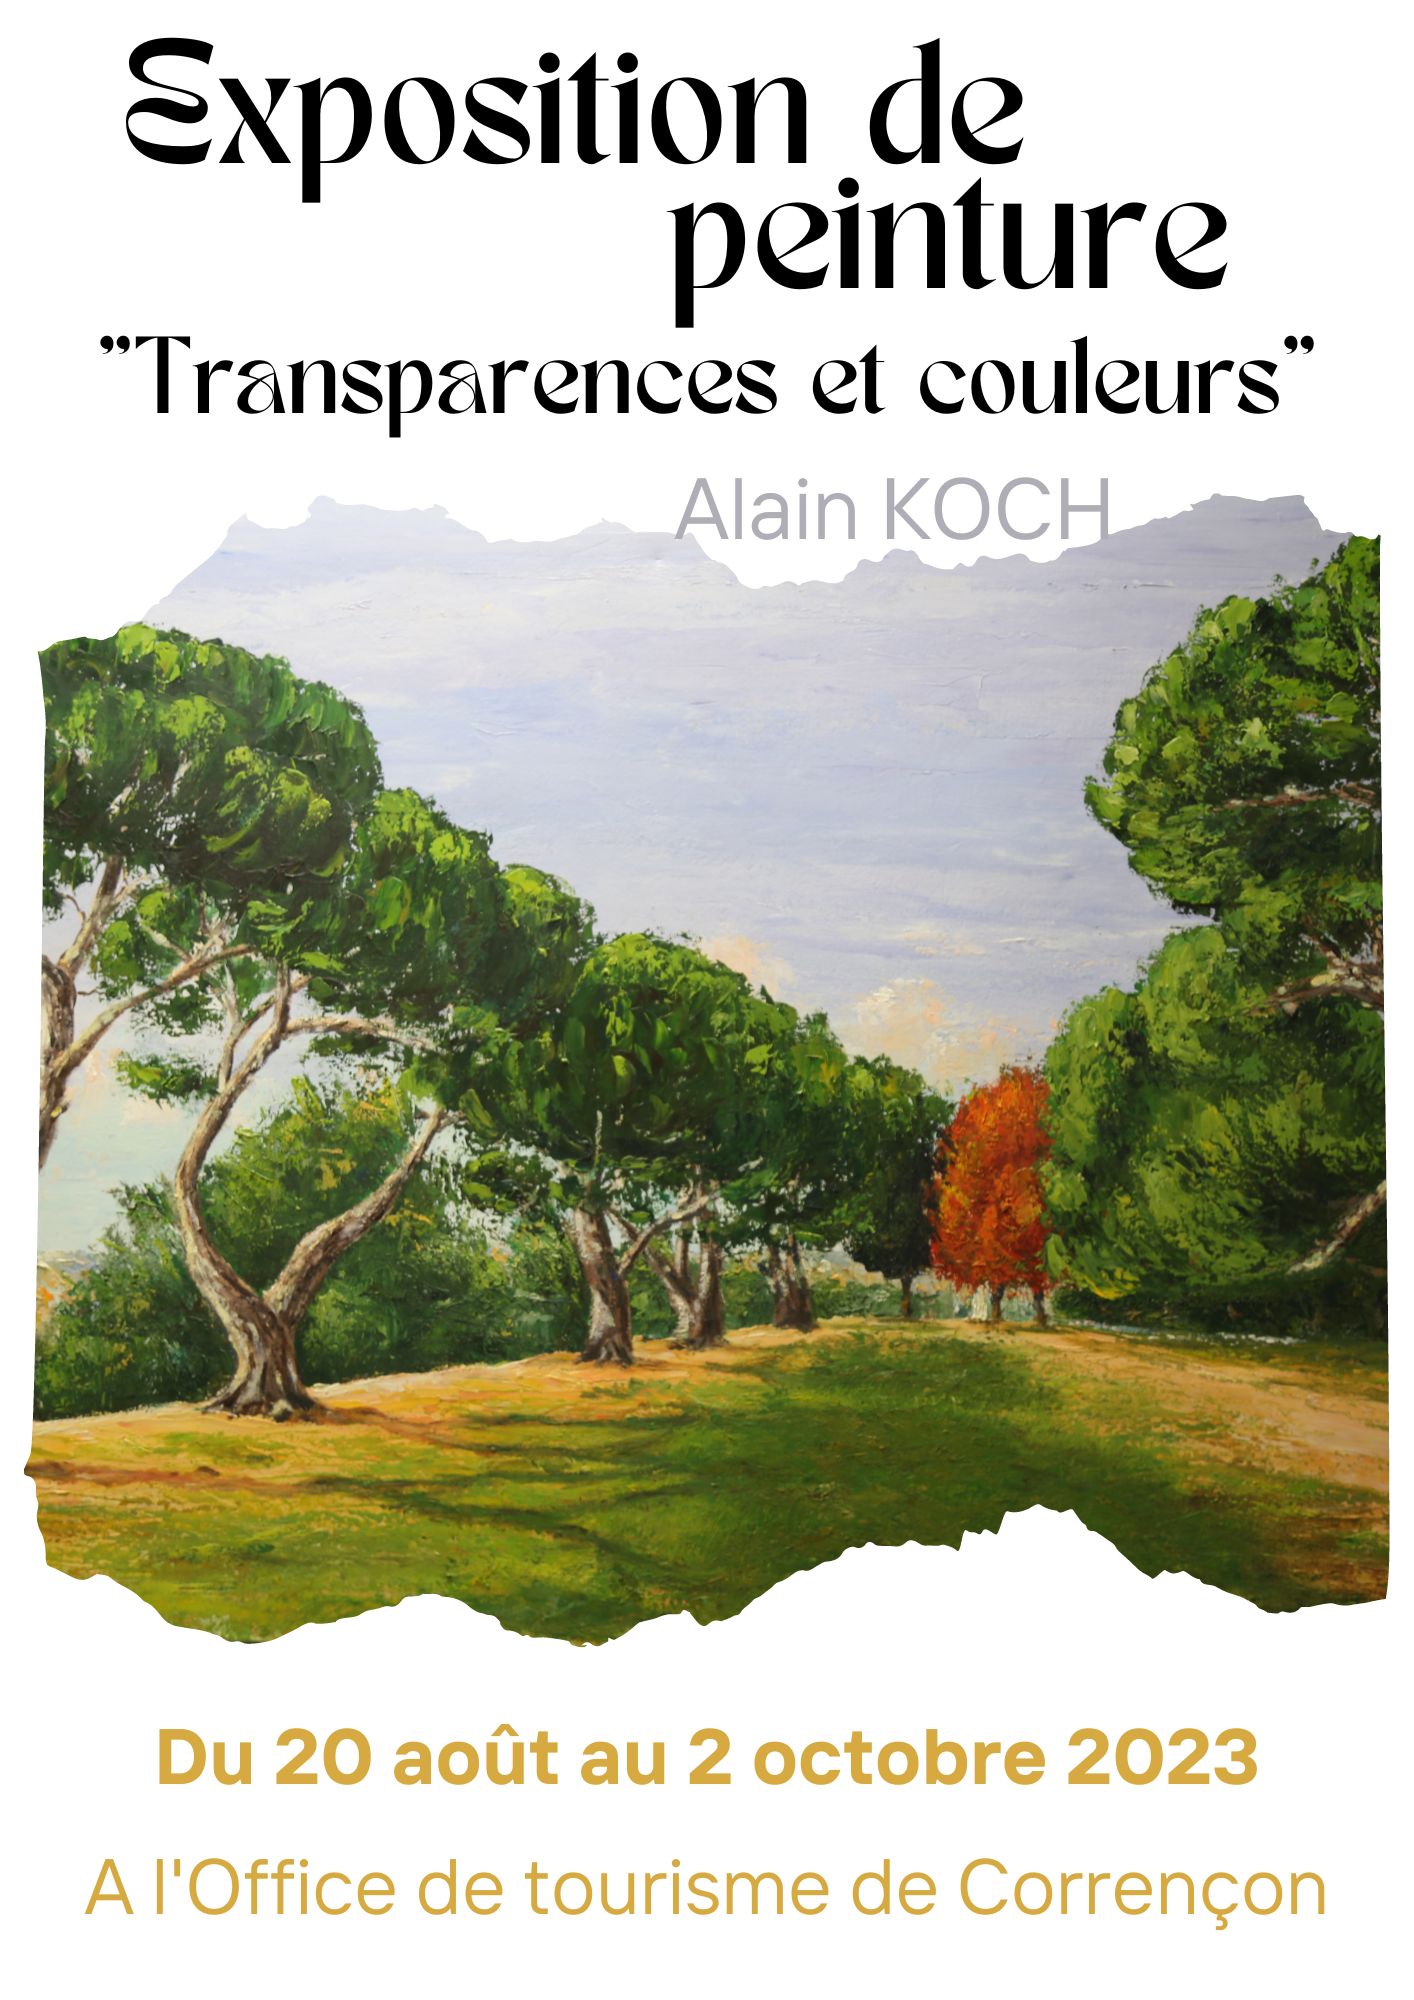 Exposition "Transparences et couleurs"